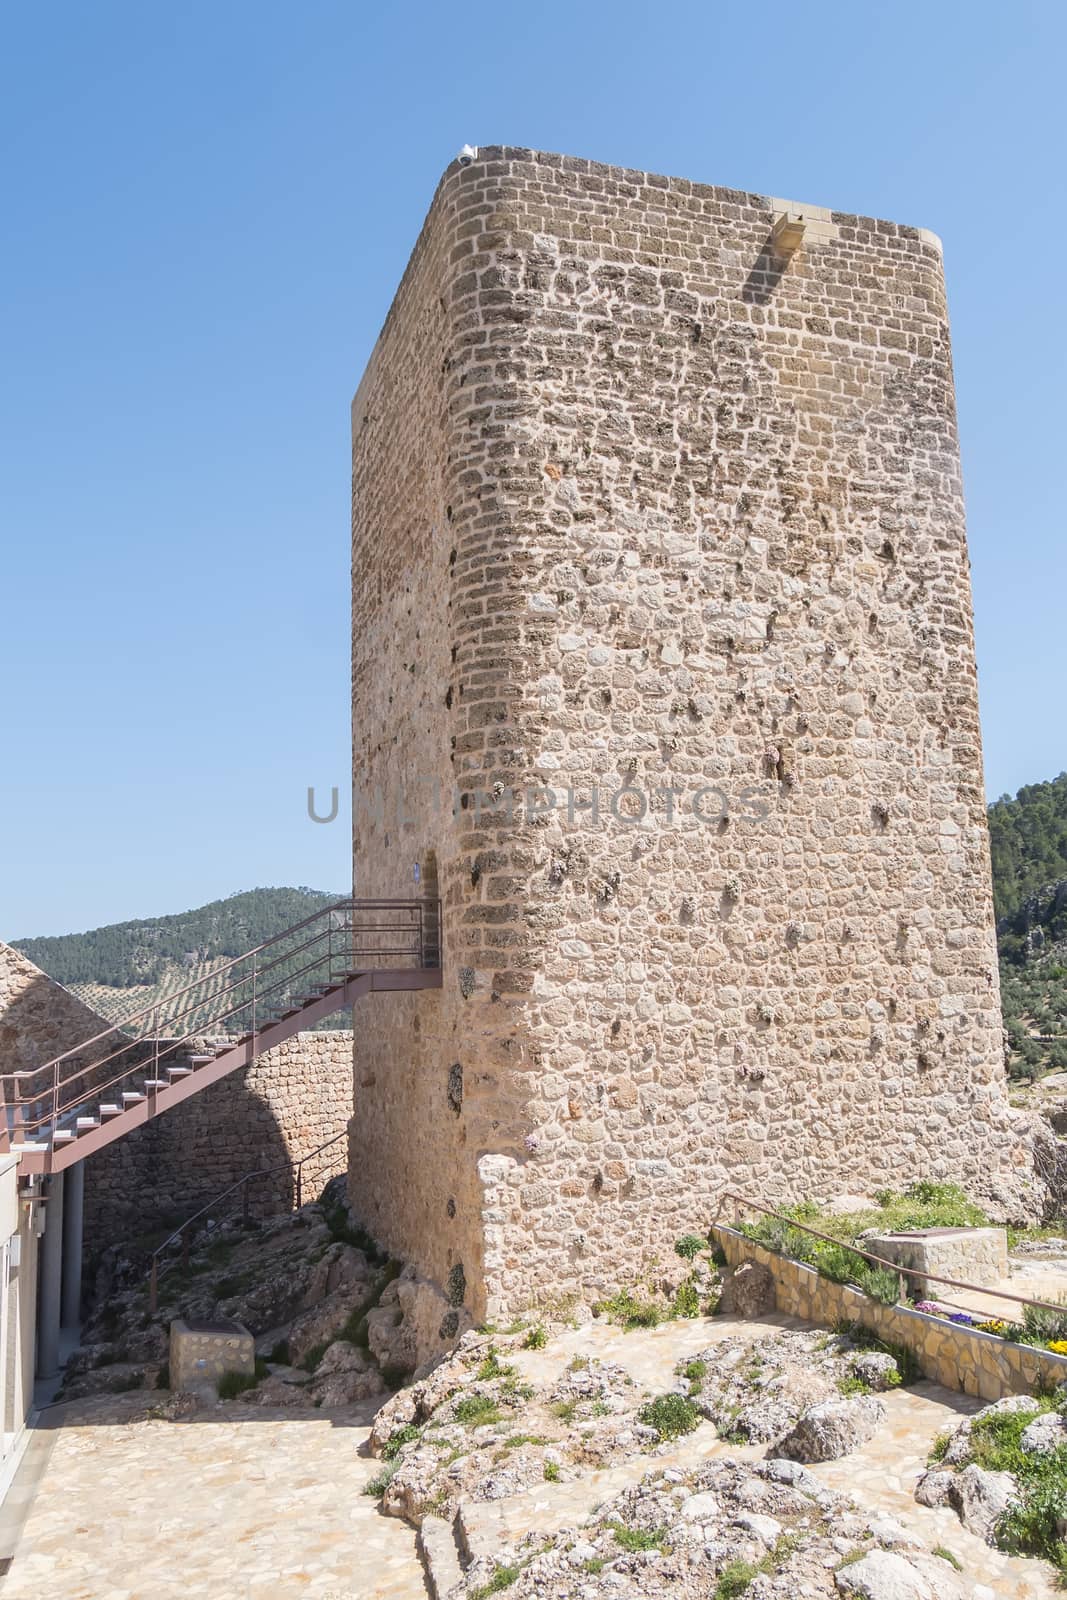 Hornos de segura castle, Cosmonarium, Jaen, Spain by max8xam